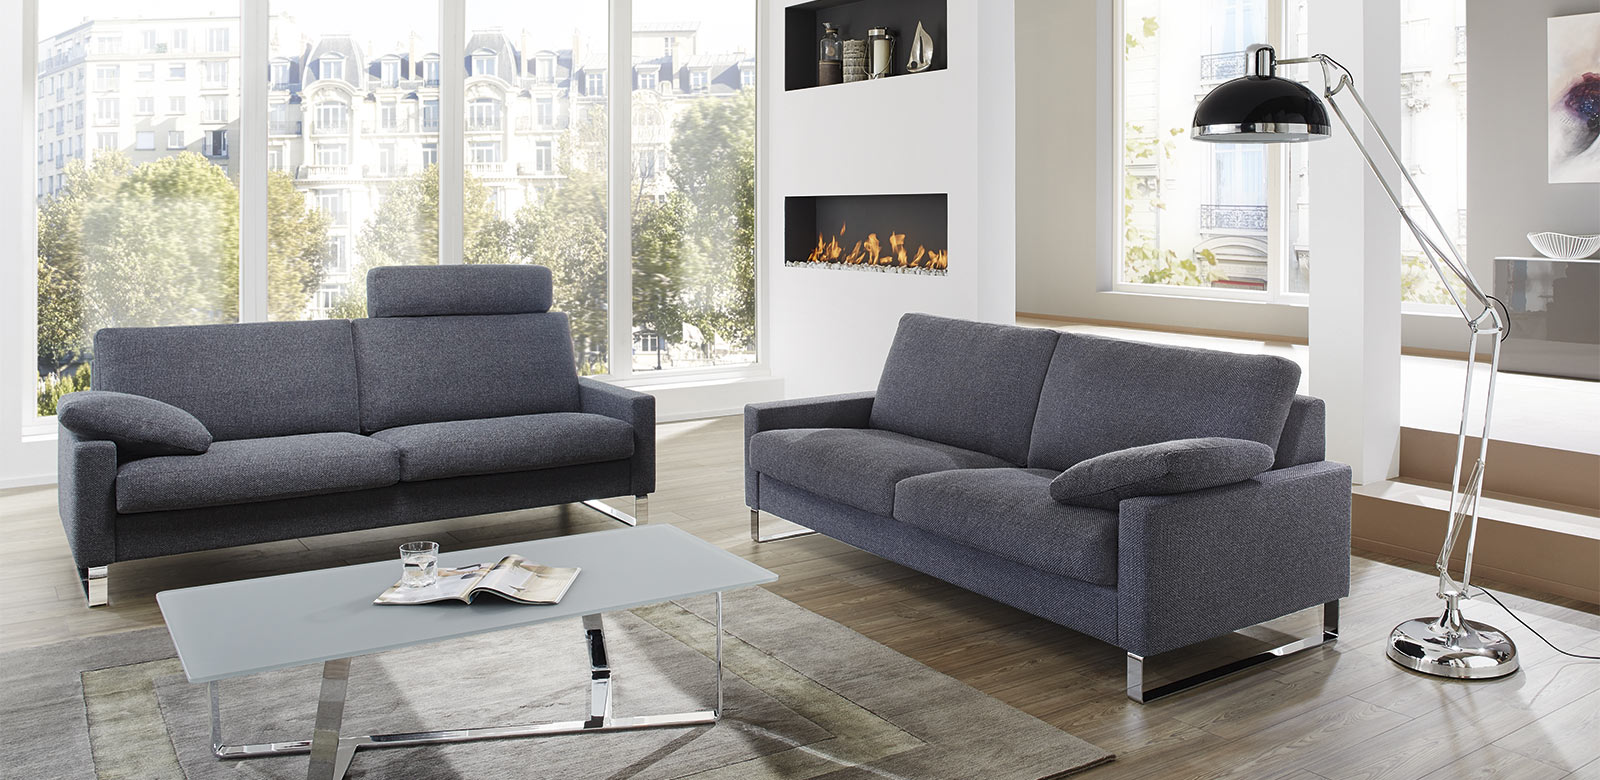 CL500 Sofas mit Kissen und Kopfstützen aus grau-blauem Stoff in modernem Apartment mit Stadtsicht und Kamin.